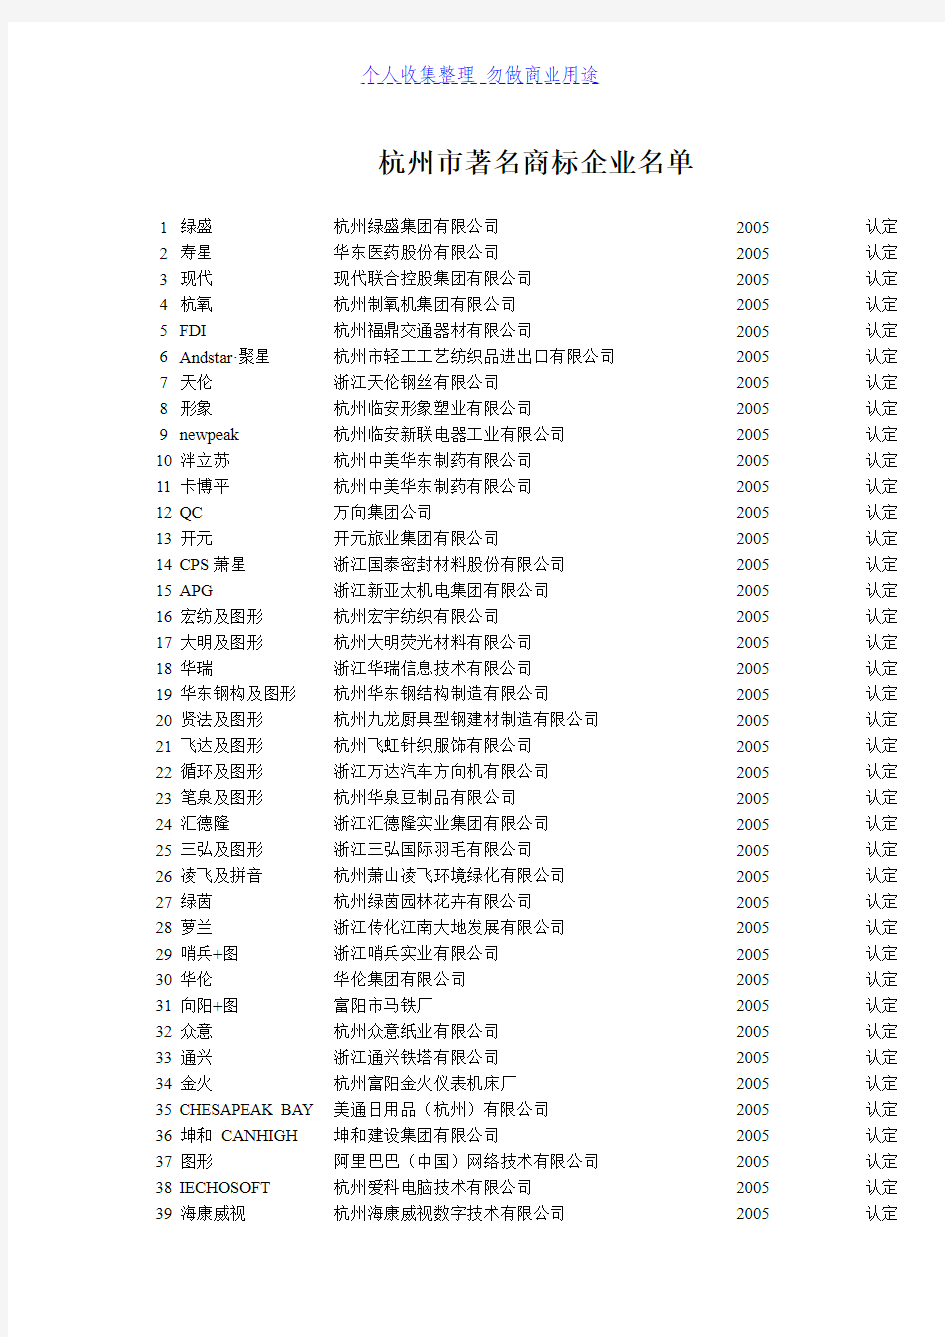 杭州市著名商标企业名单